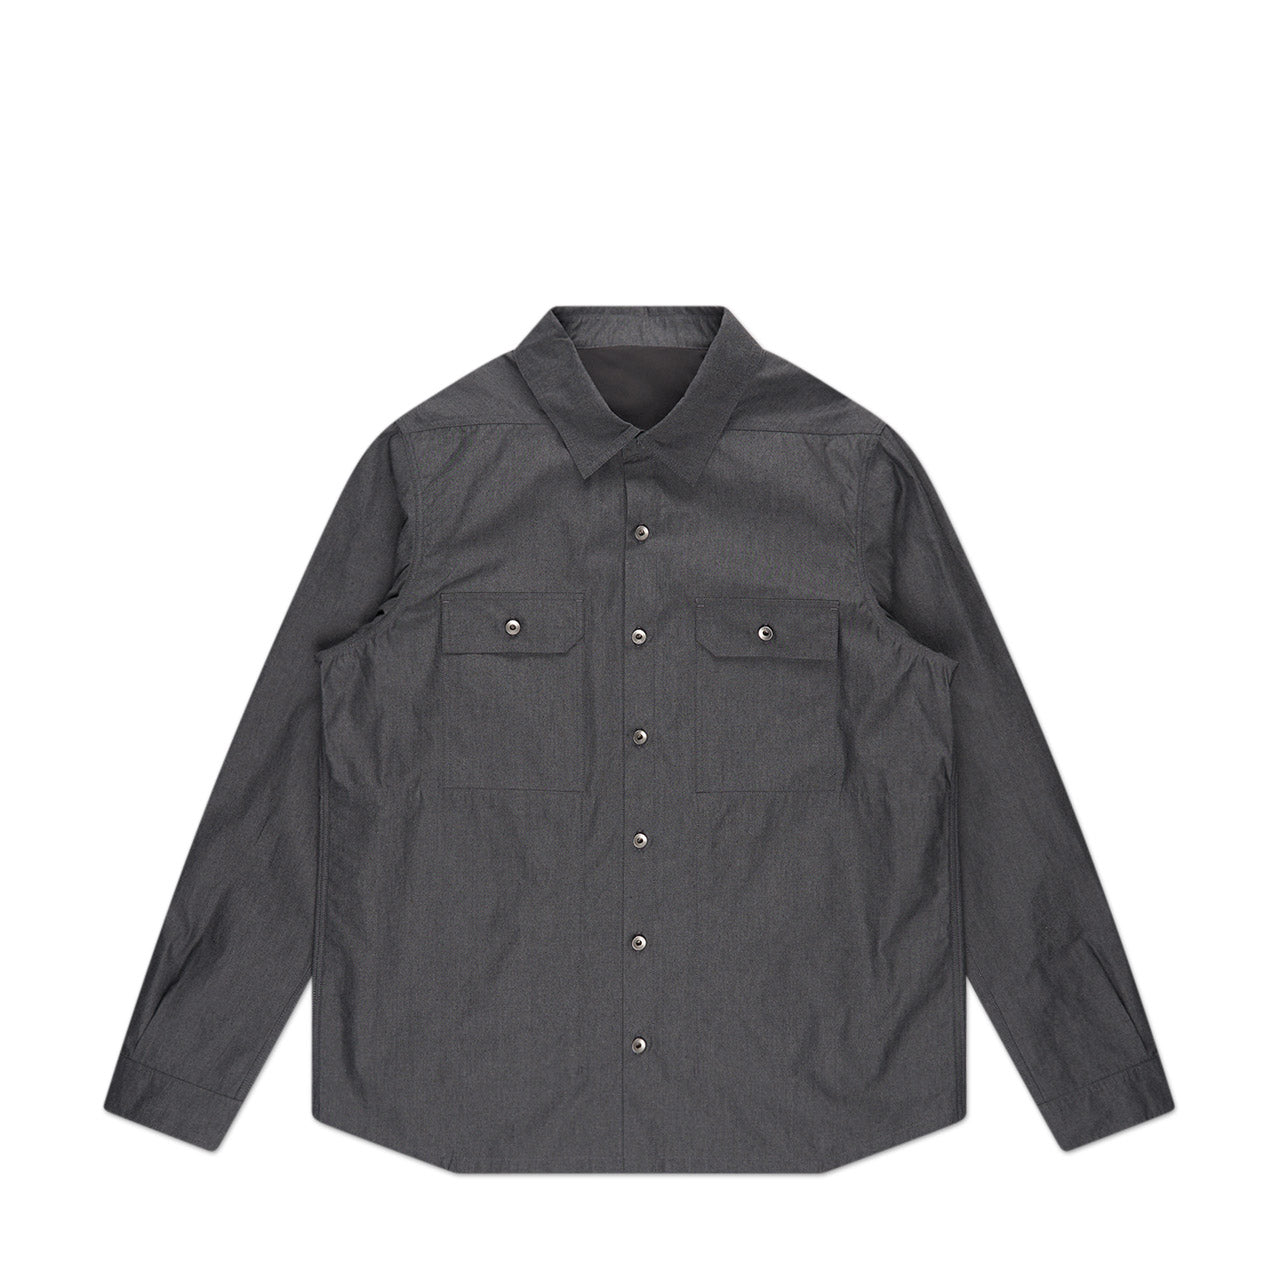 rick owens drkshdw outershirt (black melange) du01c6755 - a.plus store